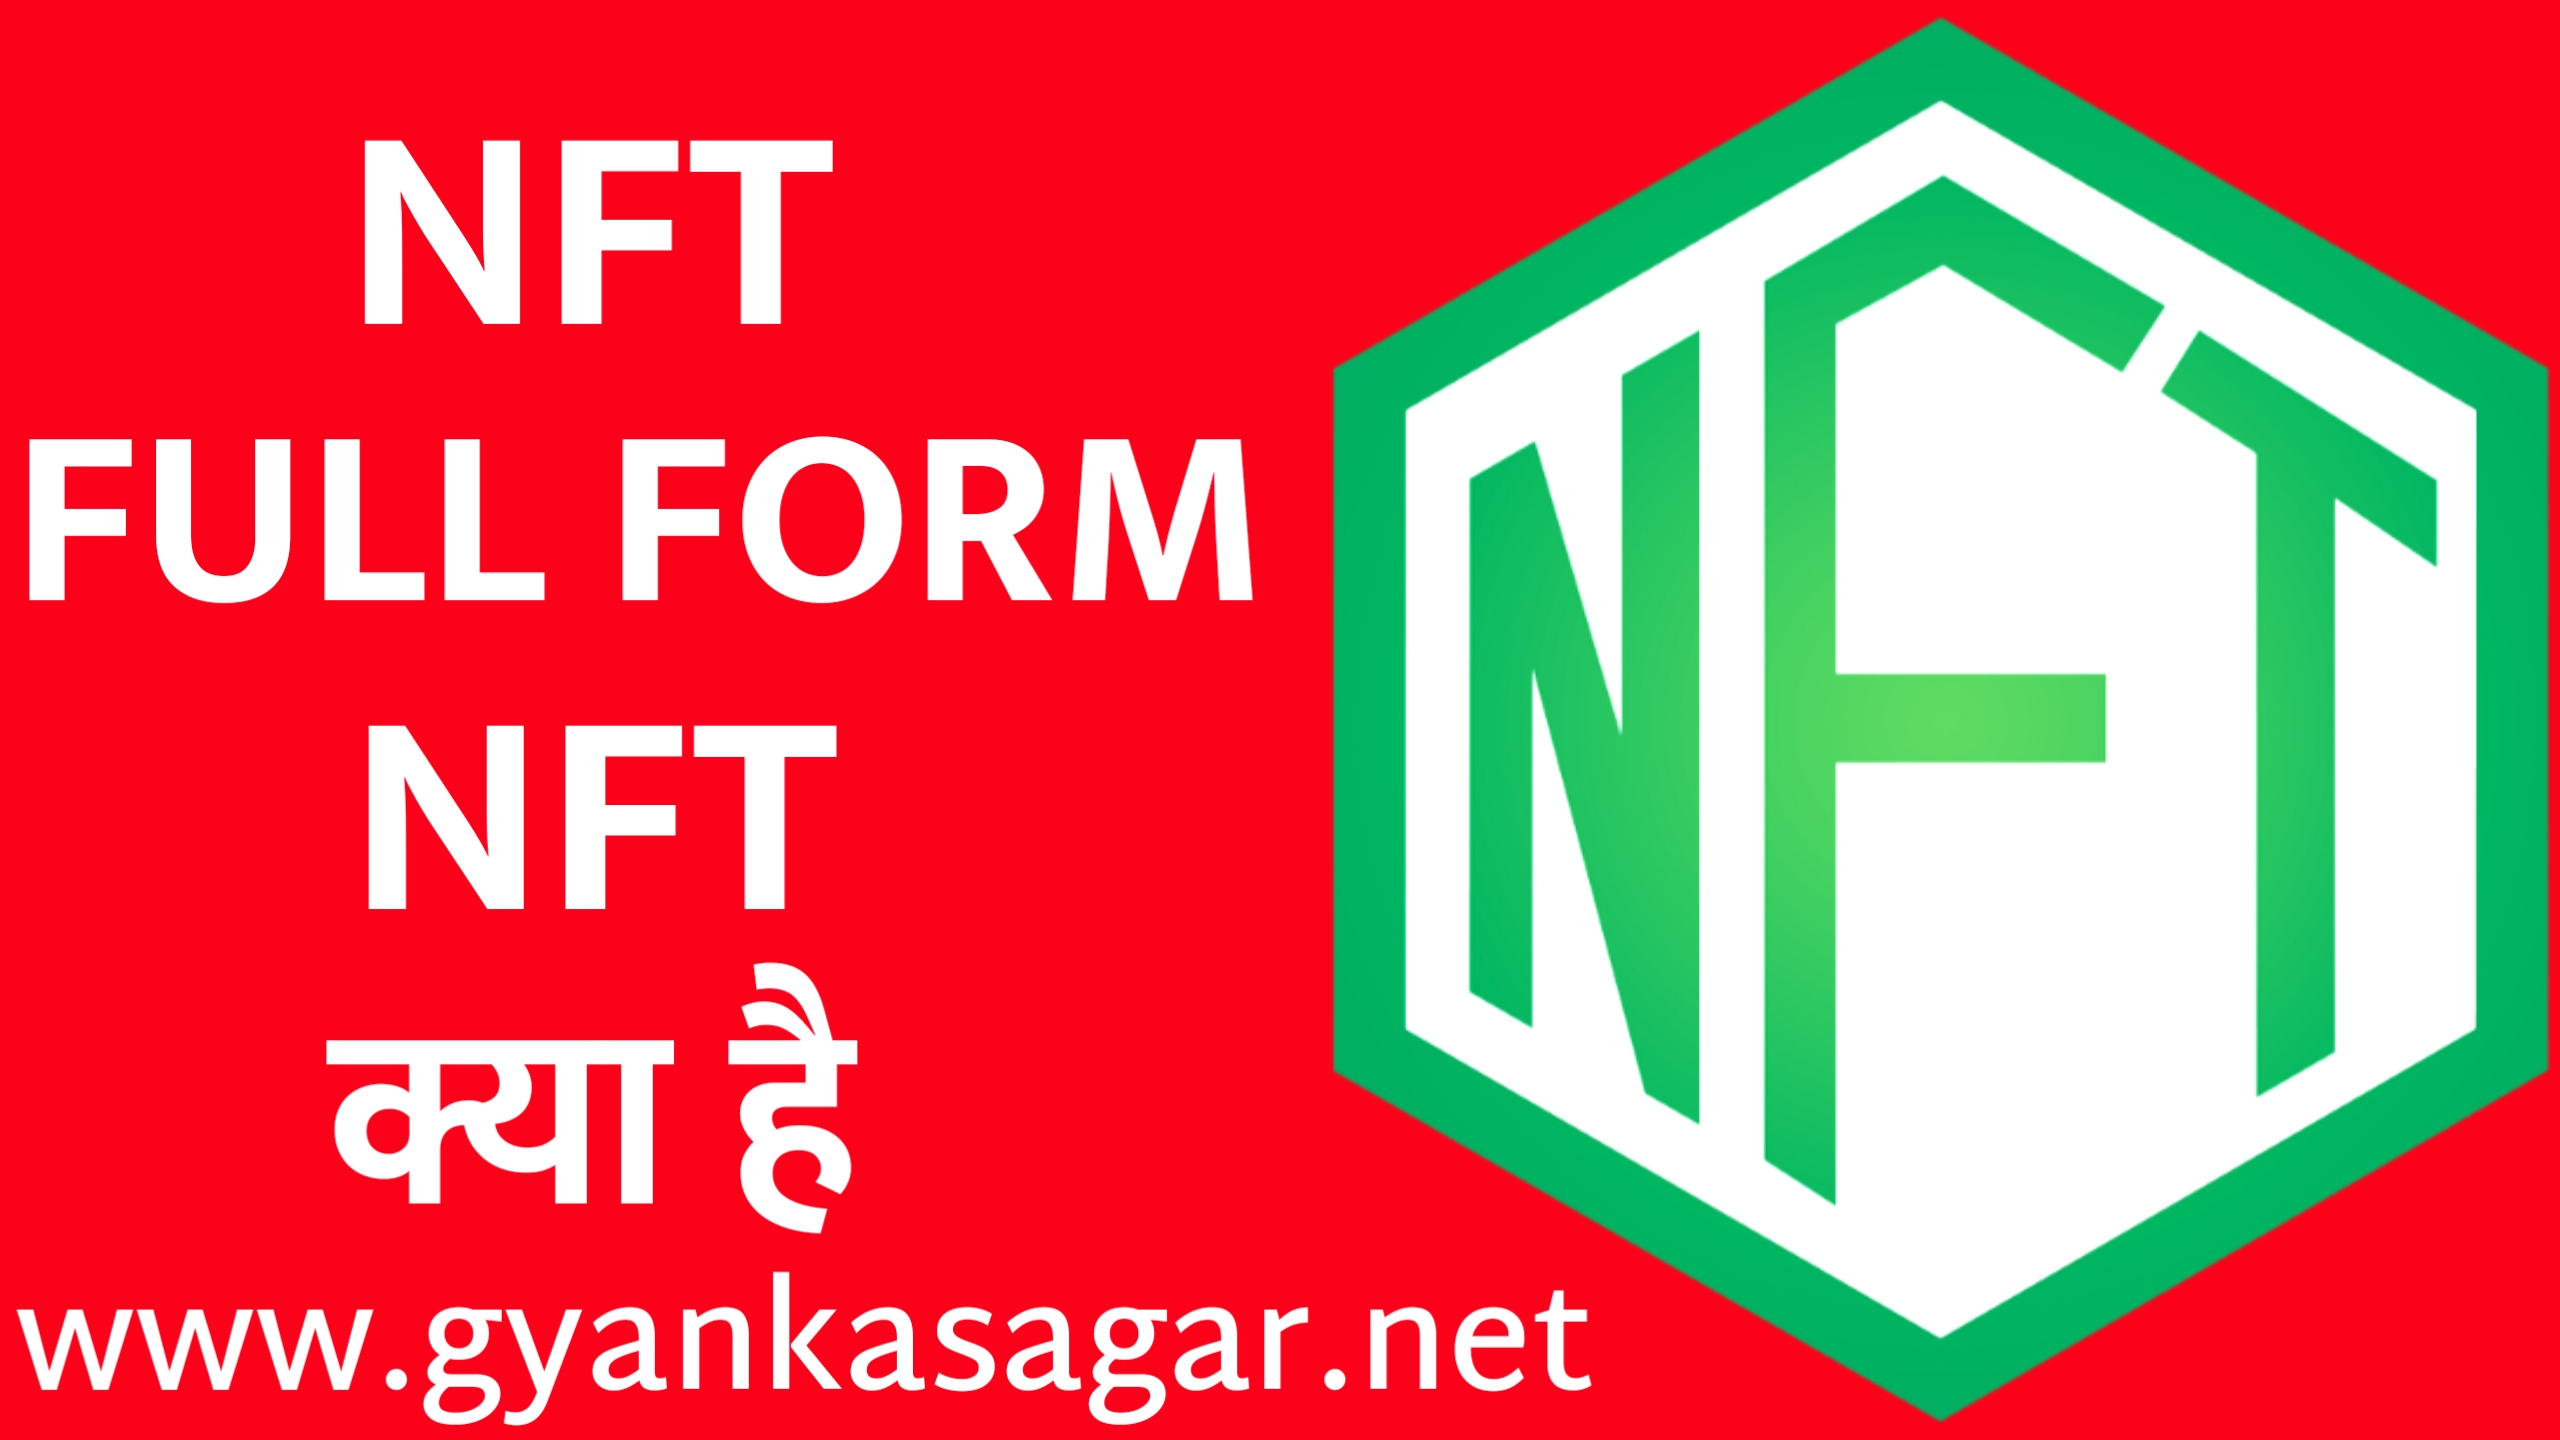 NFT full form in Hindi | NFT क्या होती है संपूर्ण जानकारी हिंदी में,NFT kya hai, NFT की फुल फॉर्म क्या है, NFT की फुल फॉर्म क्या होती है, NFT क्या होती है, NFT से संबंधित संपूर्ण जानकारी हिंदी में